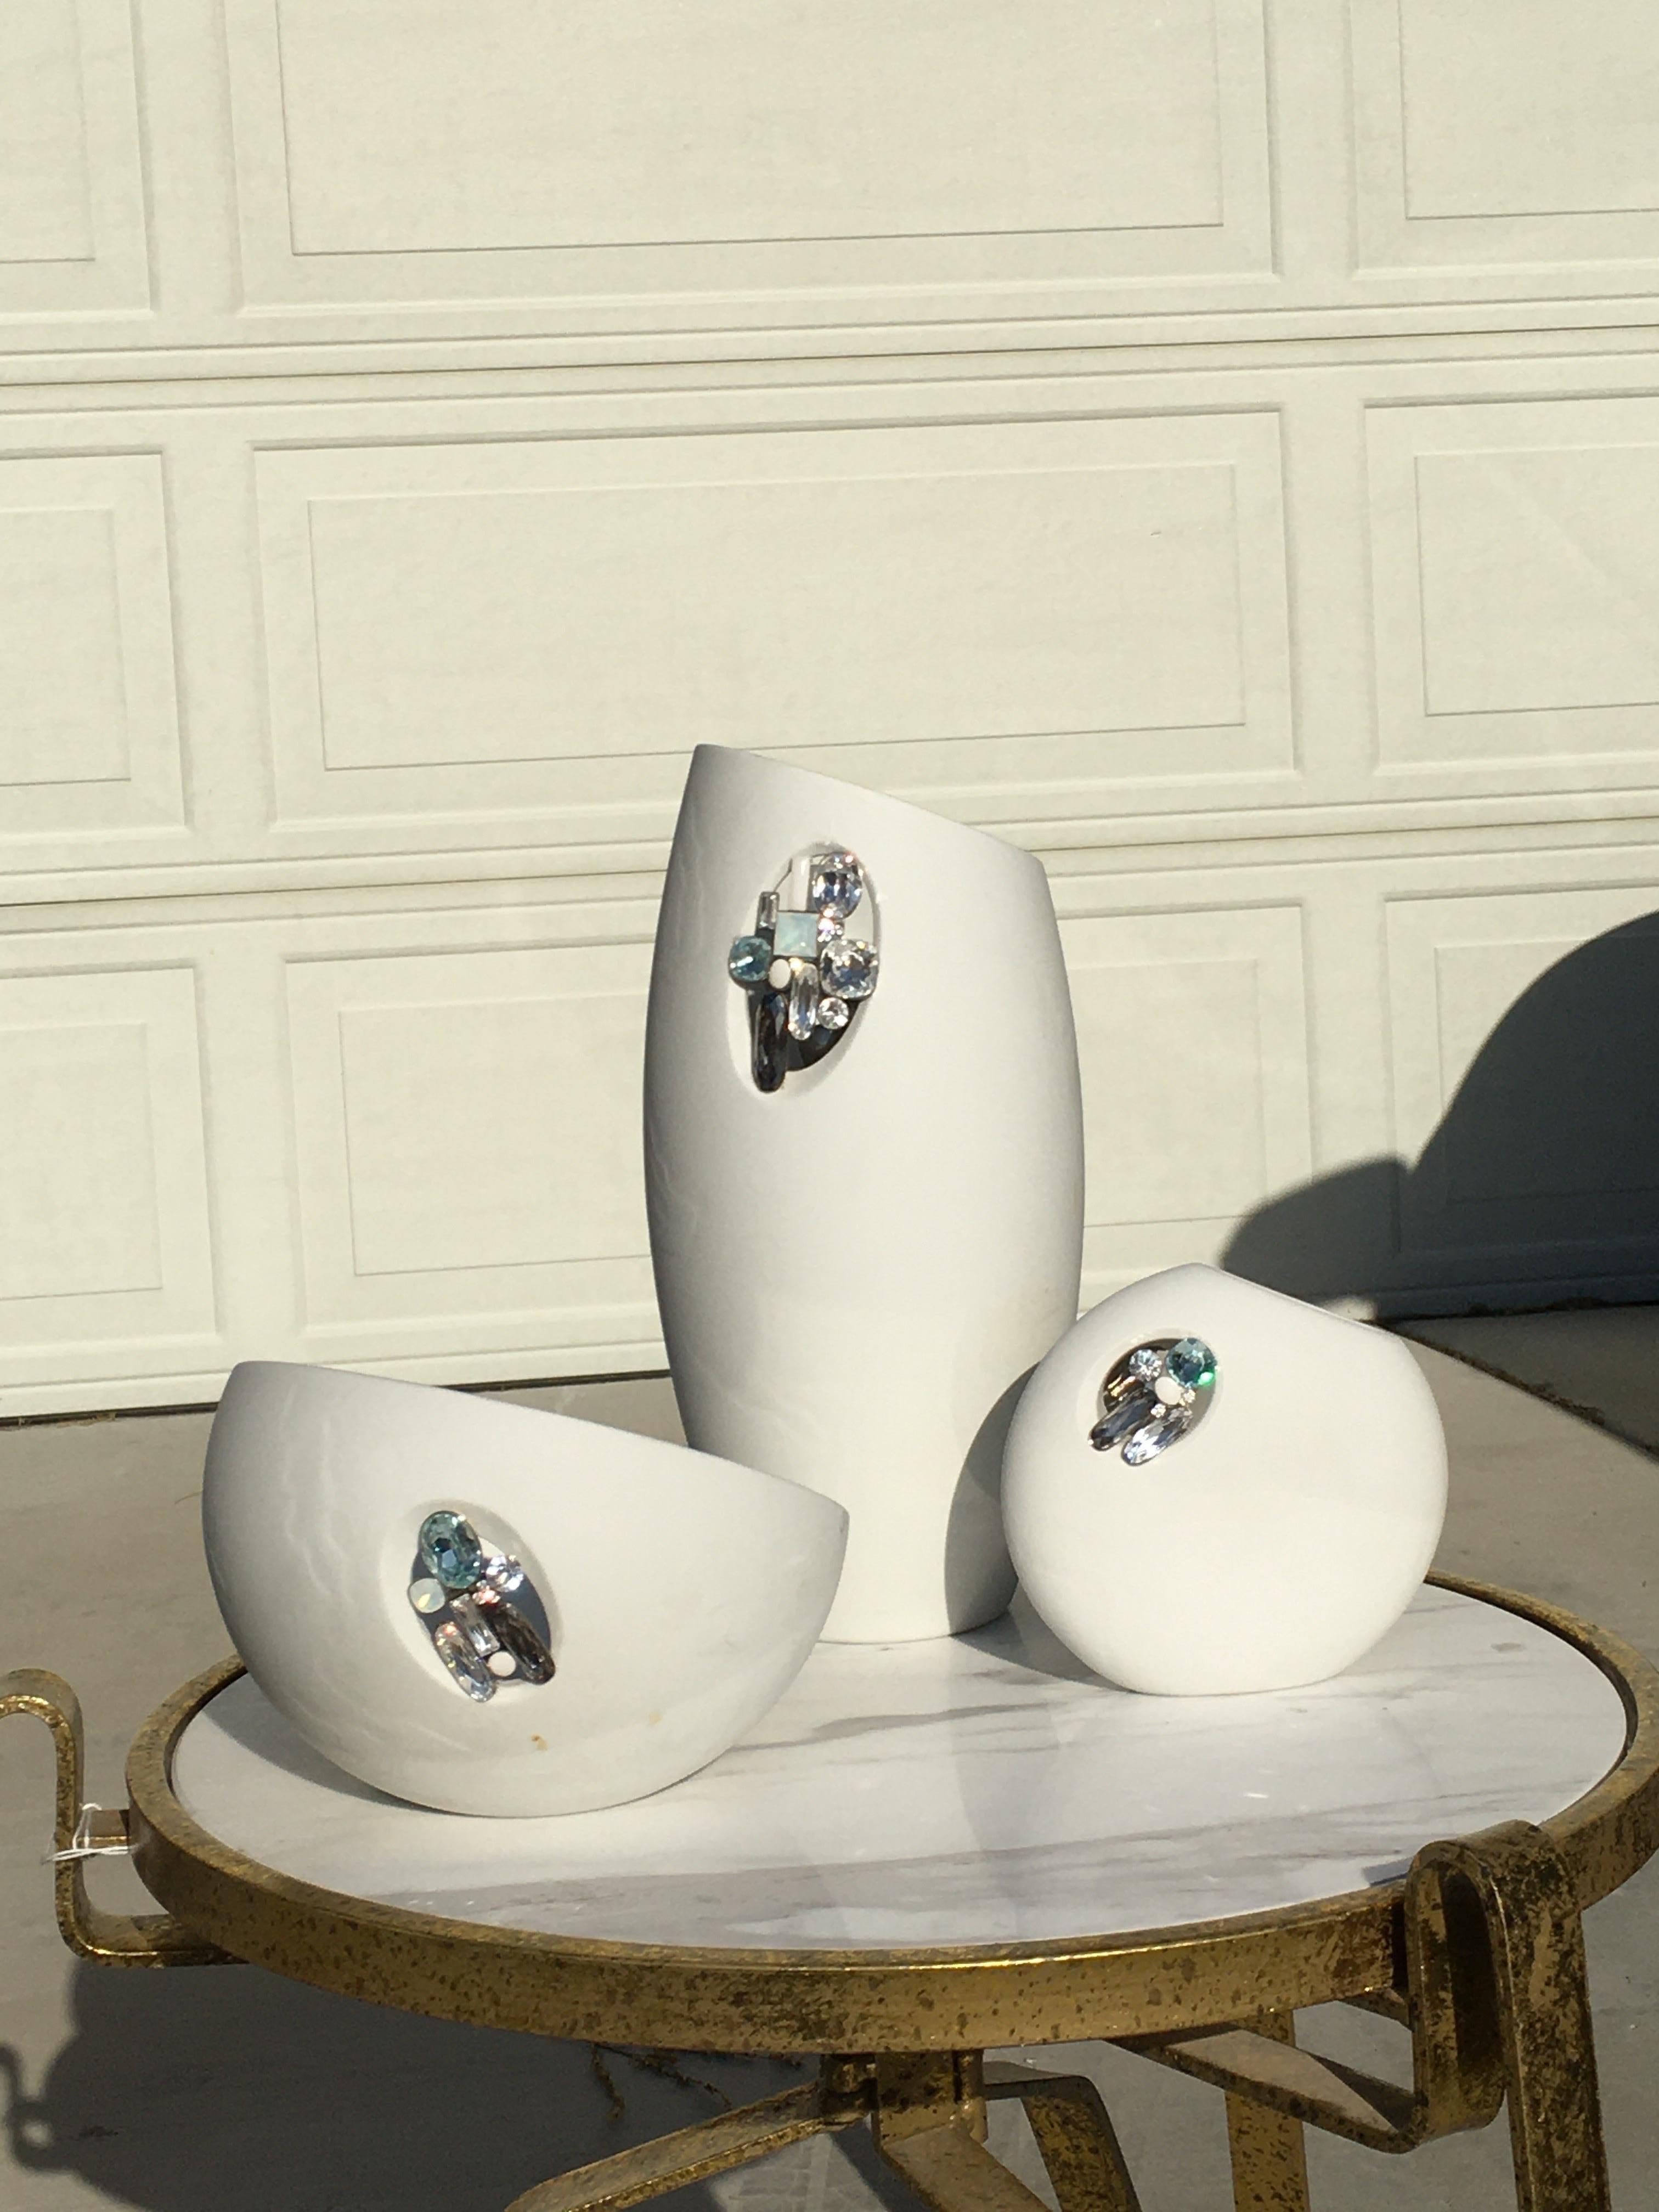 Tro of Swarovski Porcelain & Jeweld Crystal “Milik” Vases Rare Sold Out Edition  For Sale 4